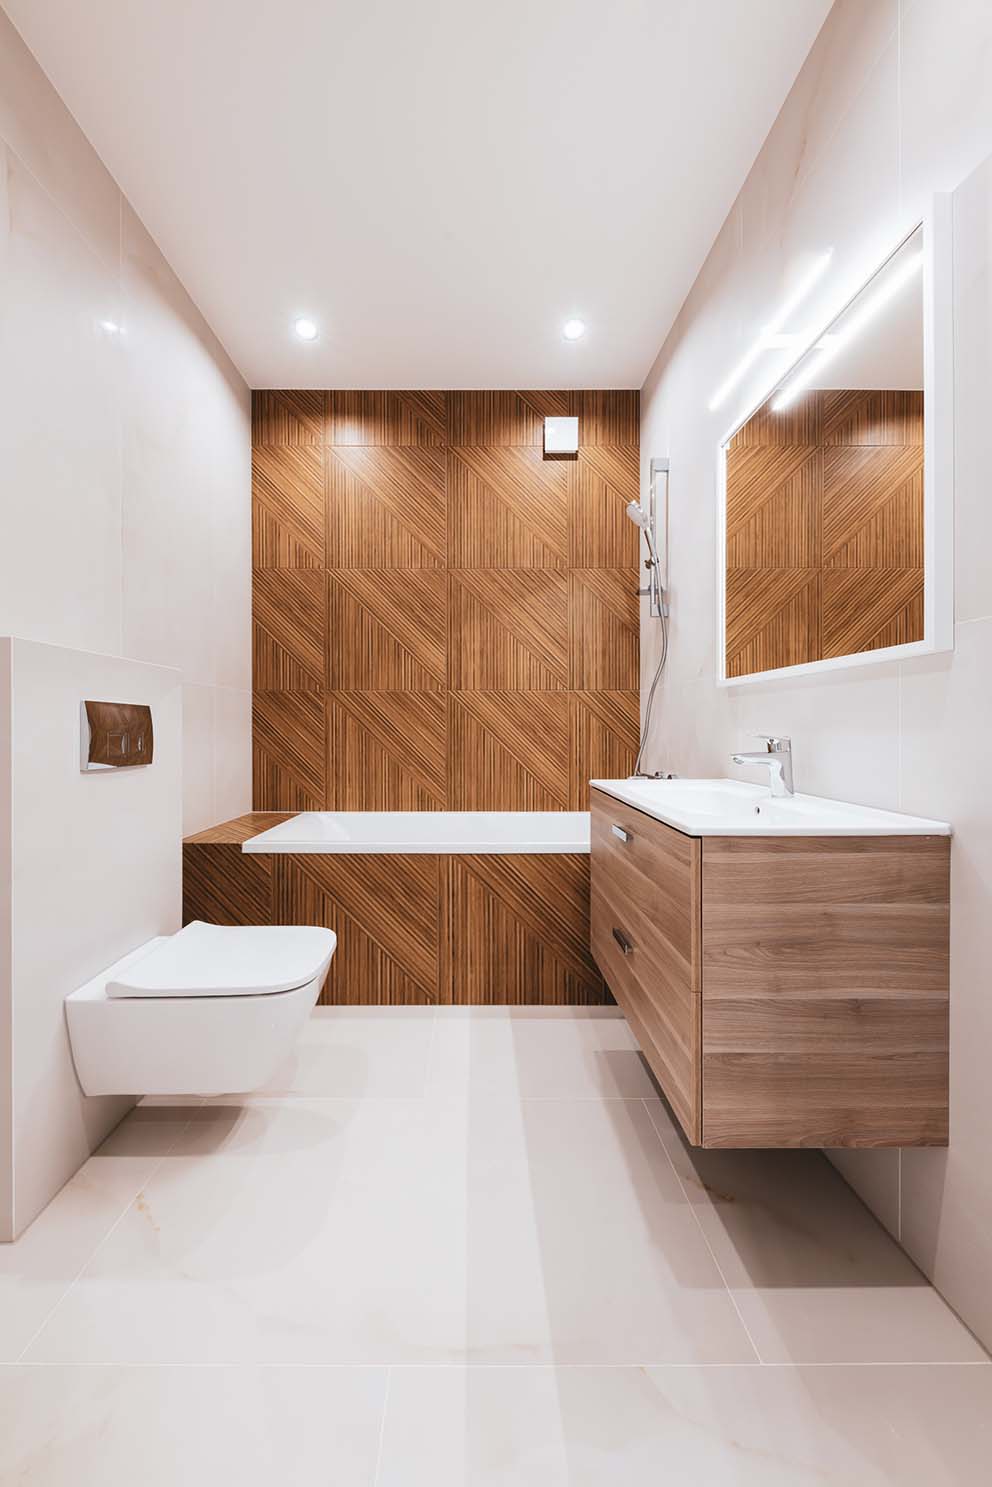 Weiß verfliestes Bad mit Keramiktoilette, Badewanne mit Holzvertäfelung und holzvertäfelter Badezimmerkonsole.